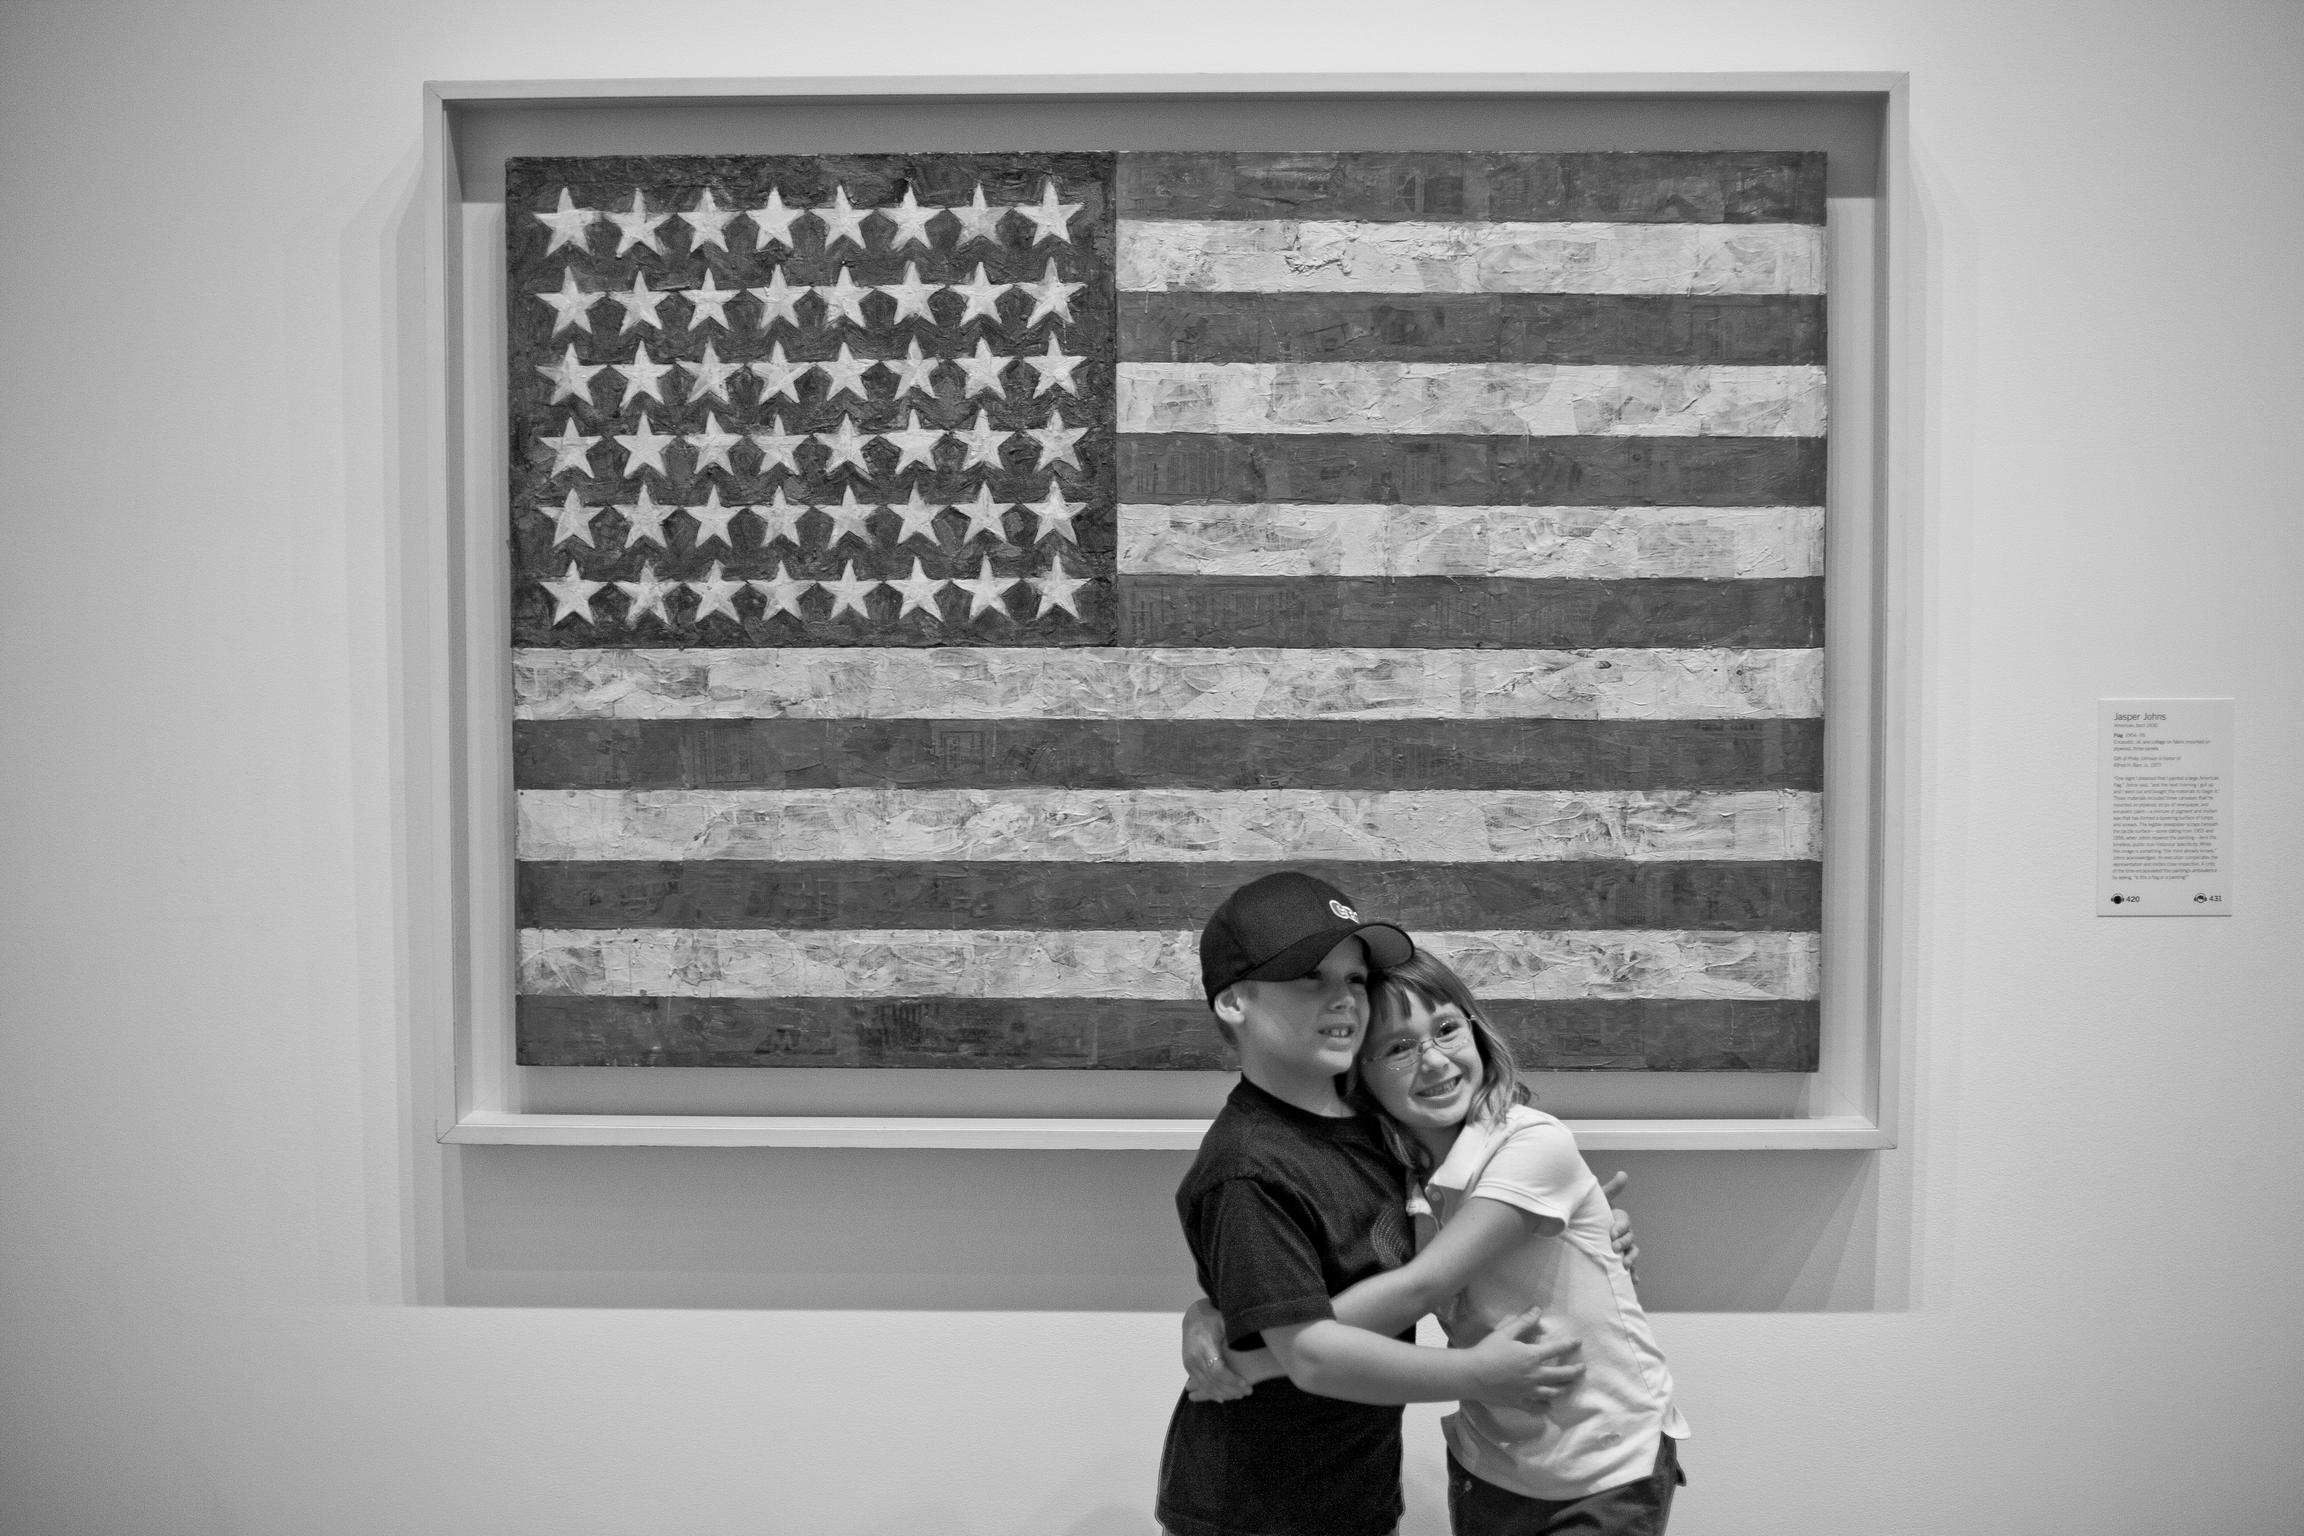 Artist Jasper John’s American Flag. MOMA. New York USA